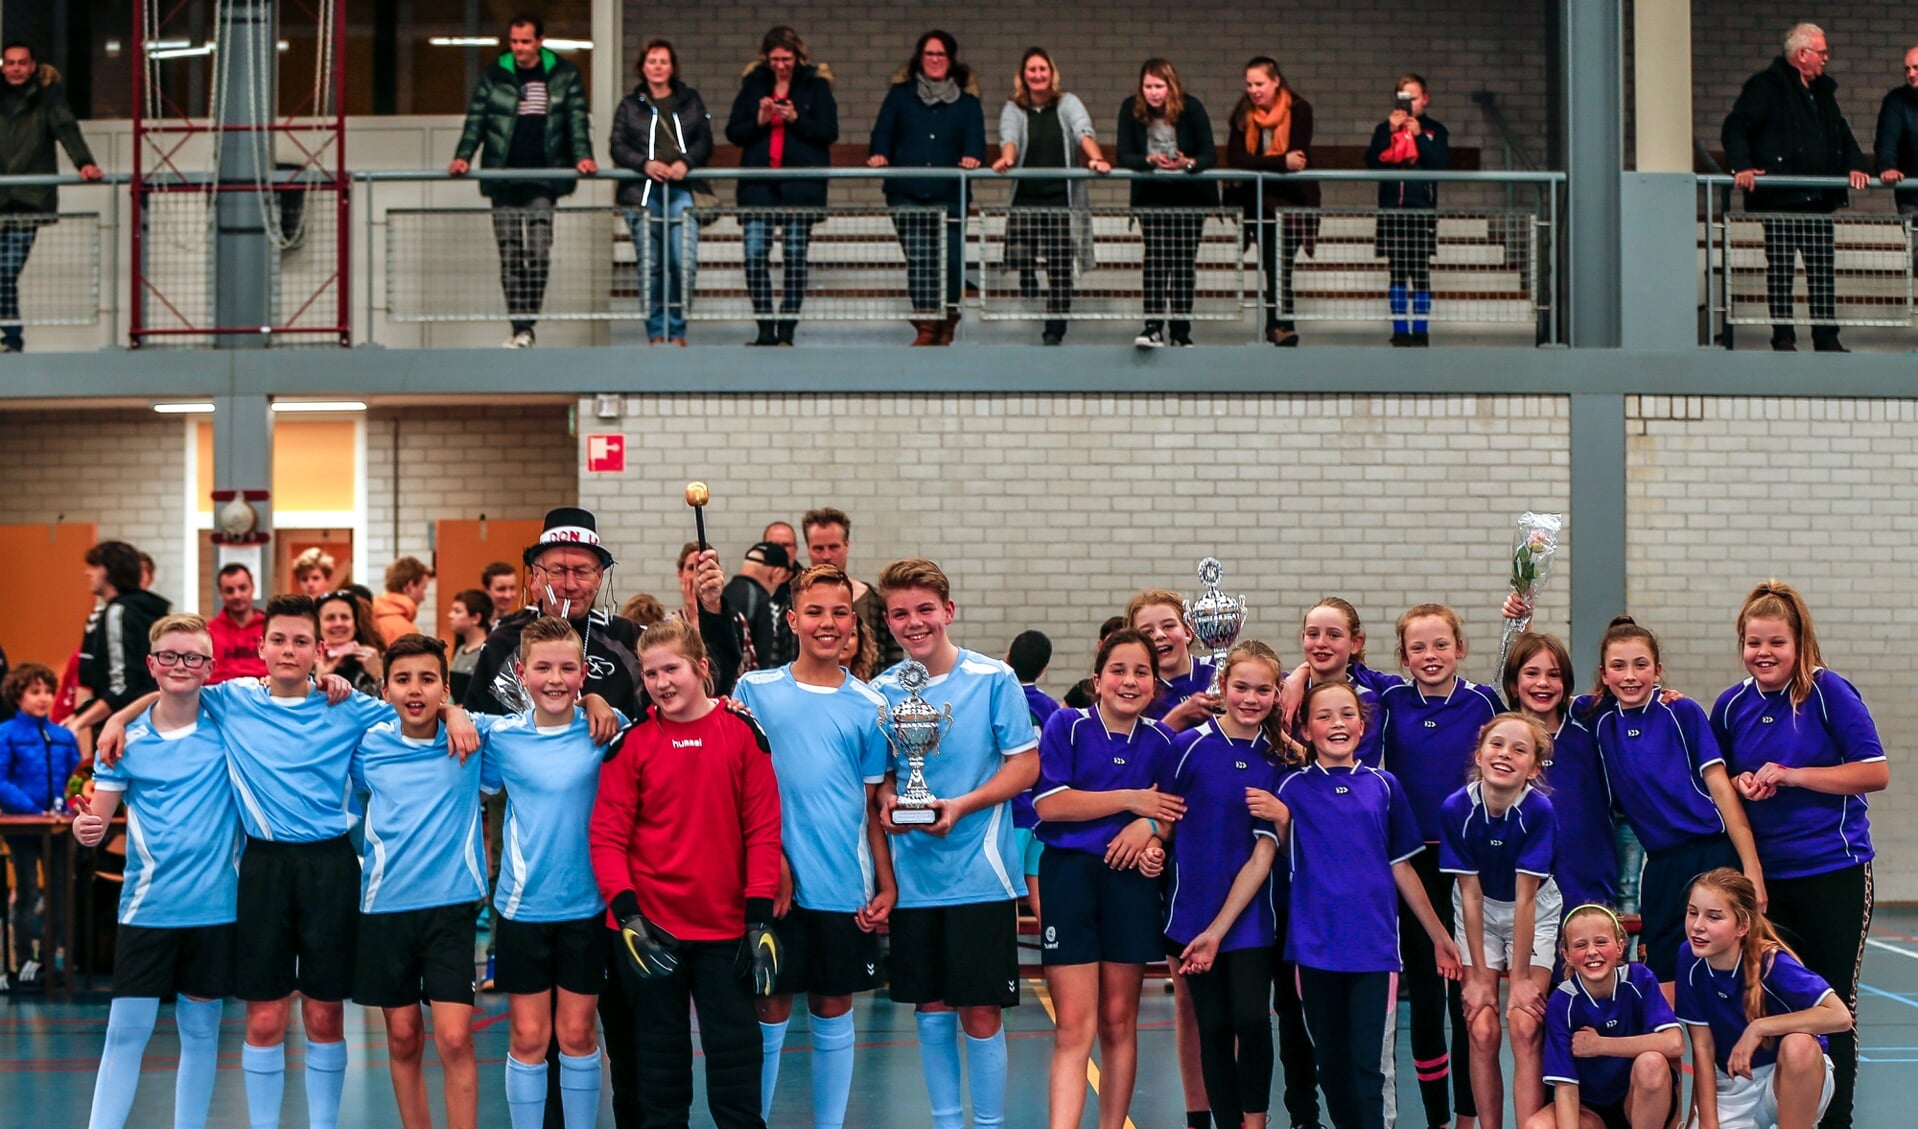 De winnende teams met links Beatrixschool en rechts Callunaschool.